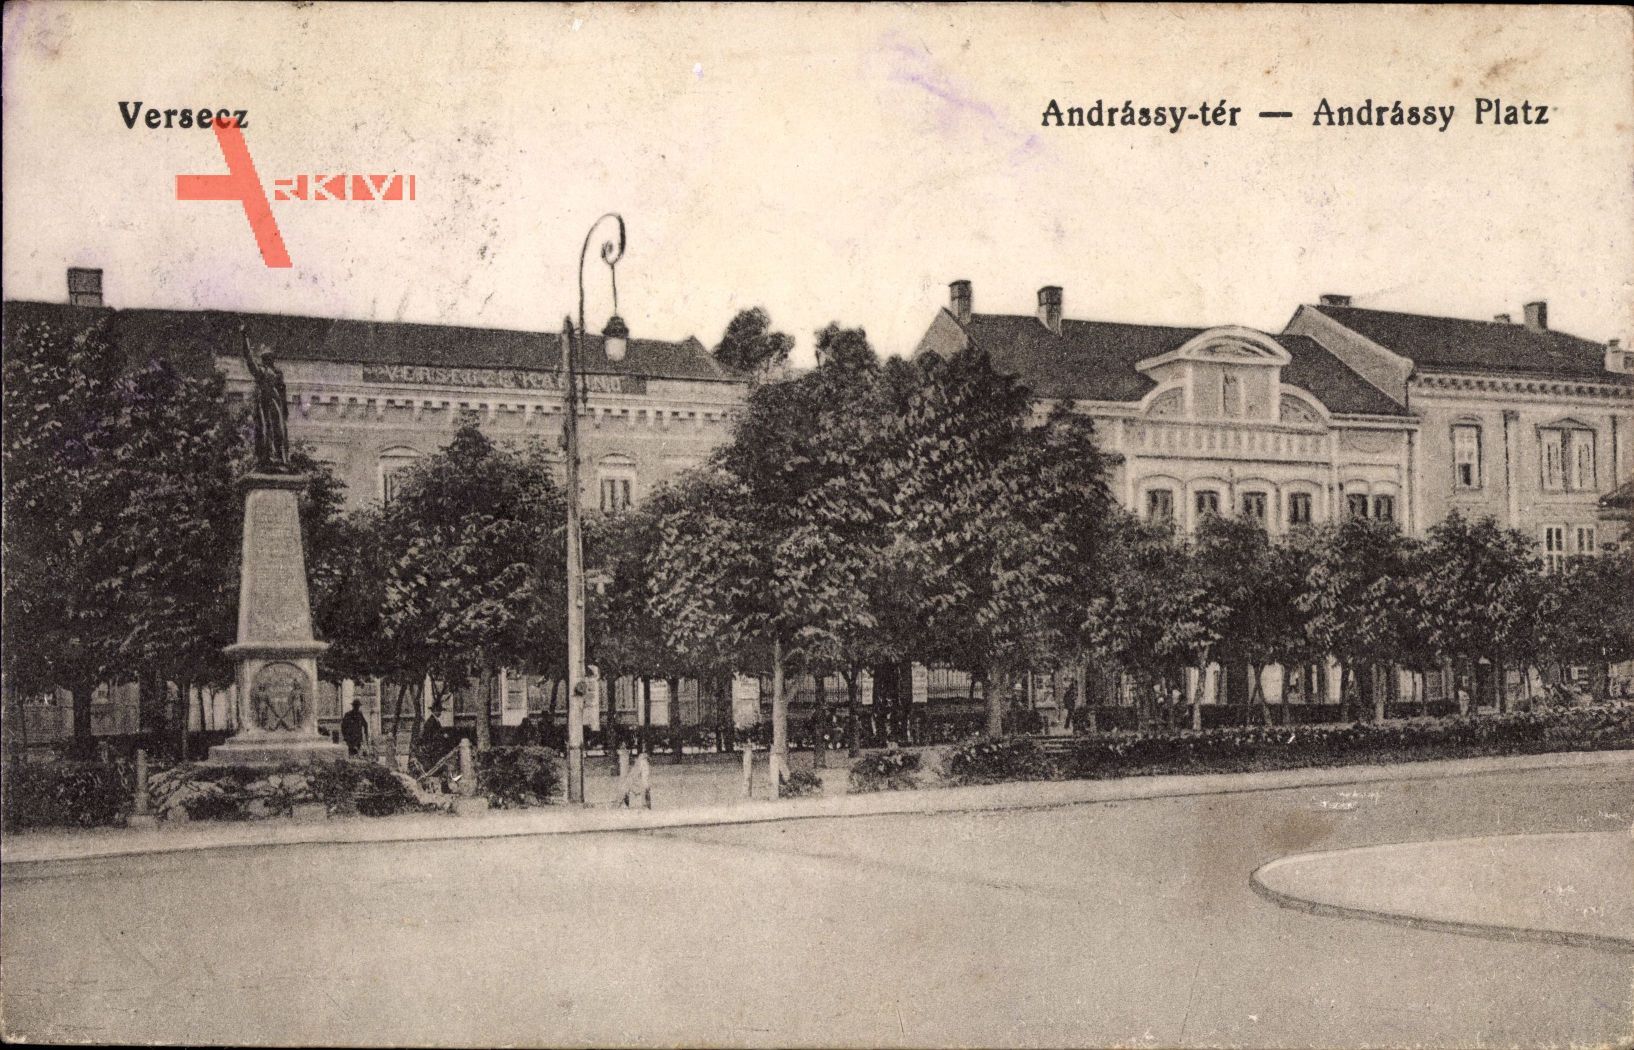 Versecz Serbien, Andrassy ter, Andrassy Platz, Denkmal